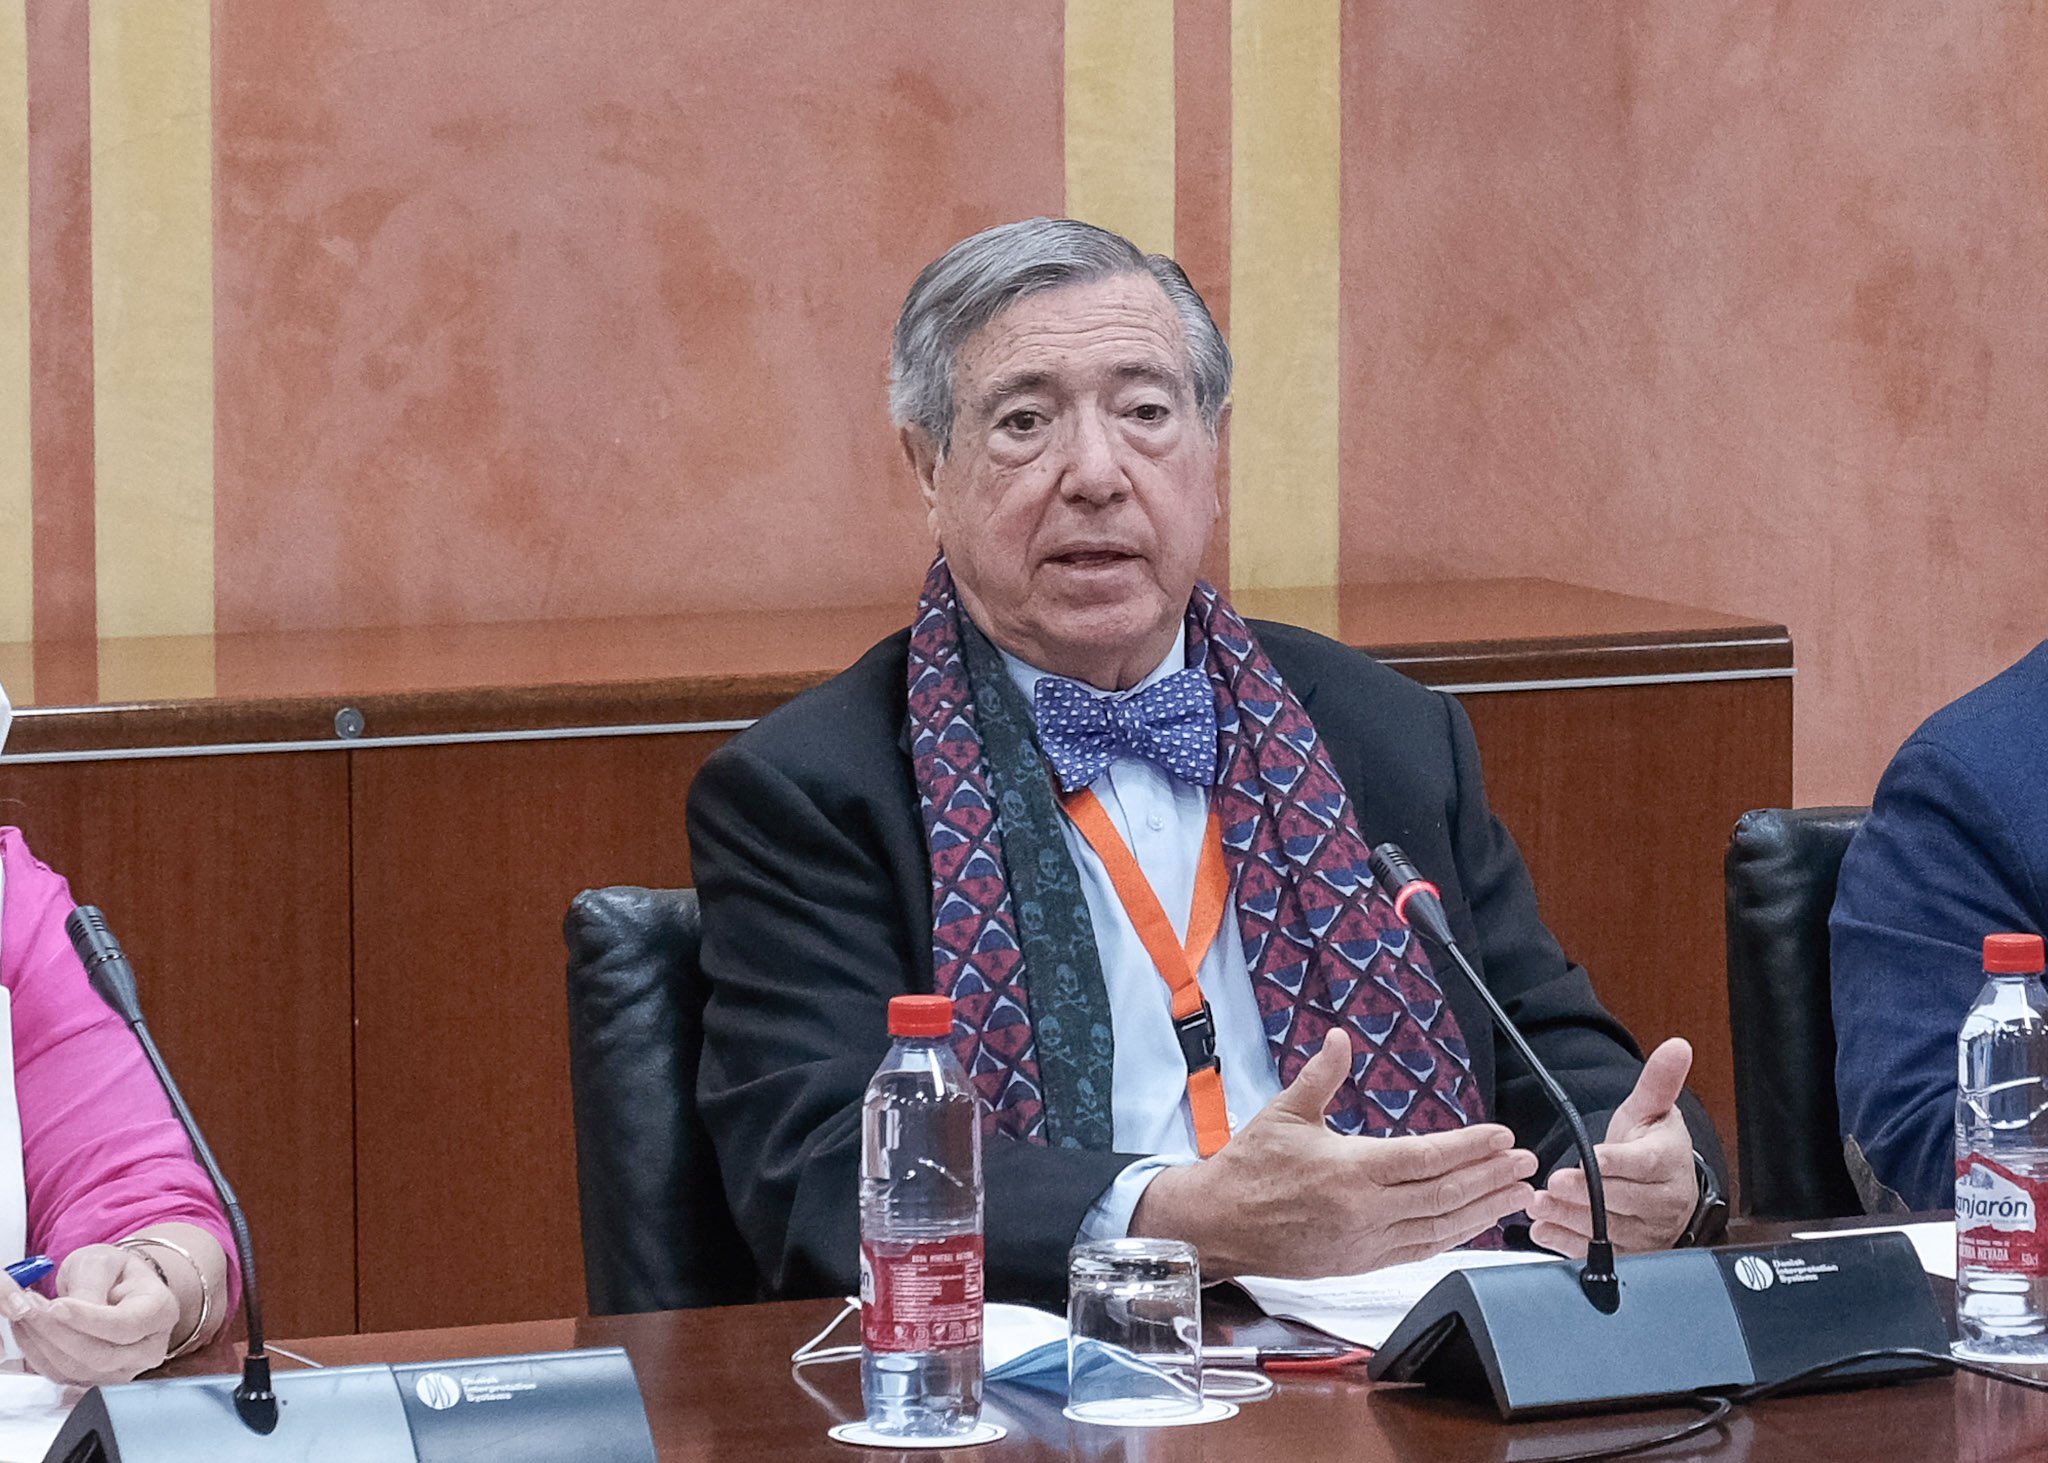  Manuel ngel Martn, presidente del Consejo Empresarial Economa y Financiacin de la Confederacin de Empresarios de Andaluca (CEA)
 